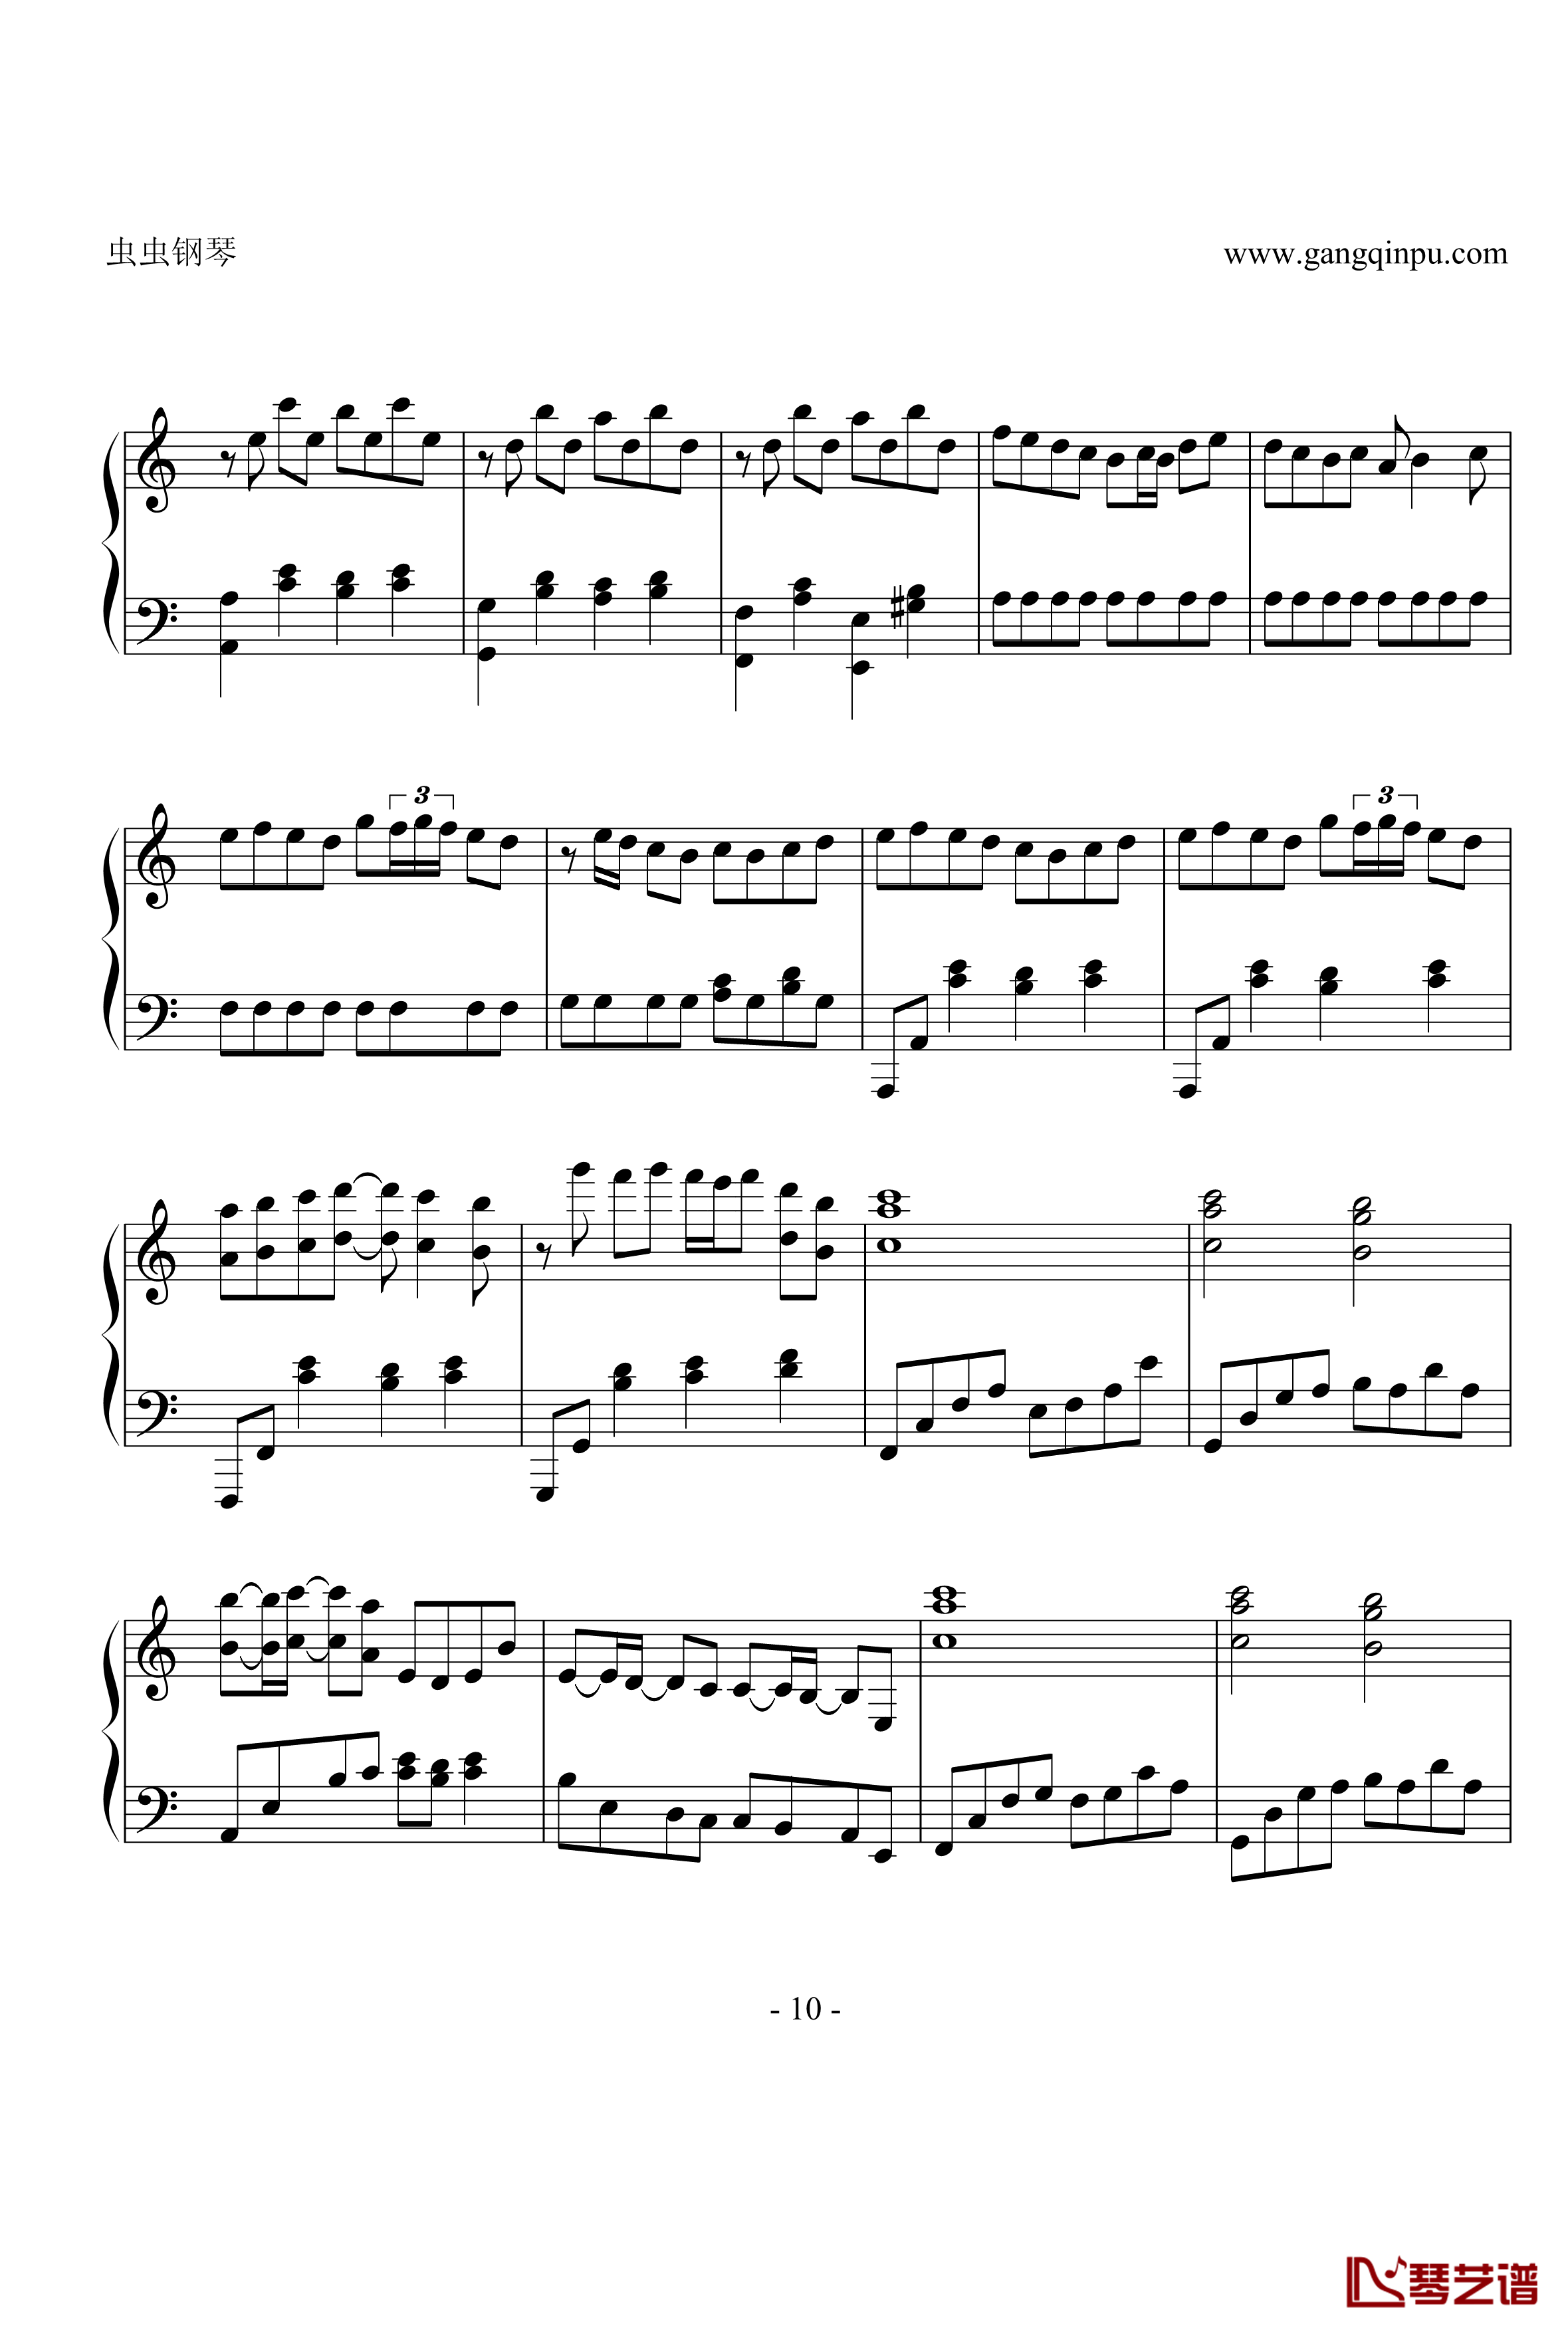 亡灵钢琴钢琴谱-修改版之再版-电锯惊魂10